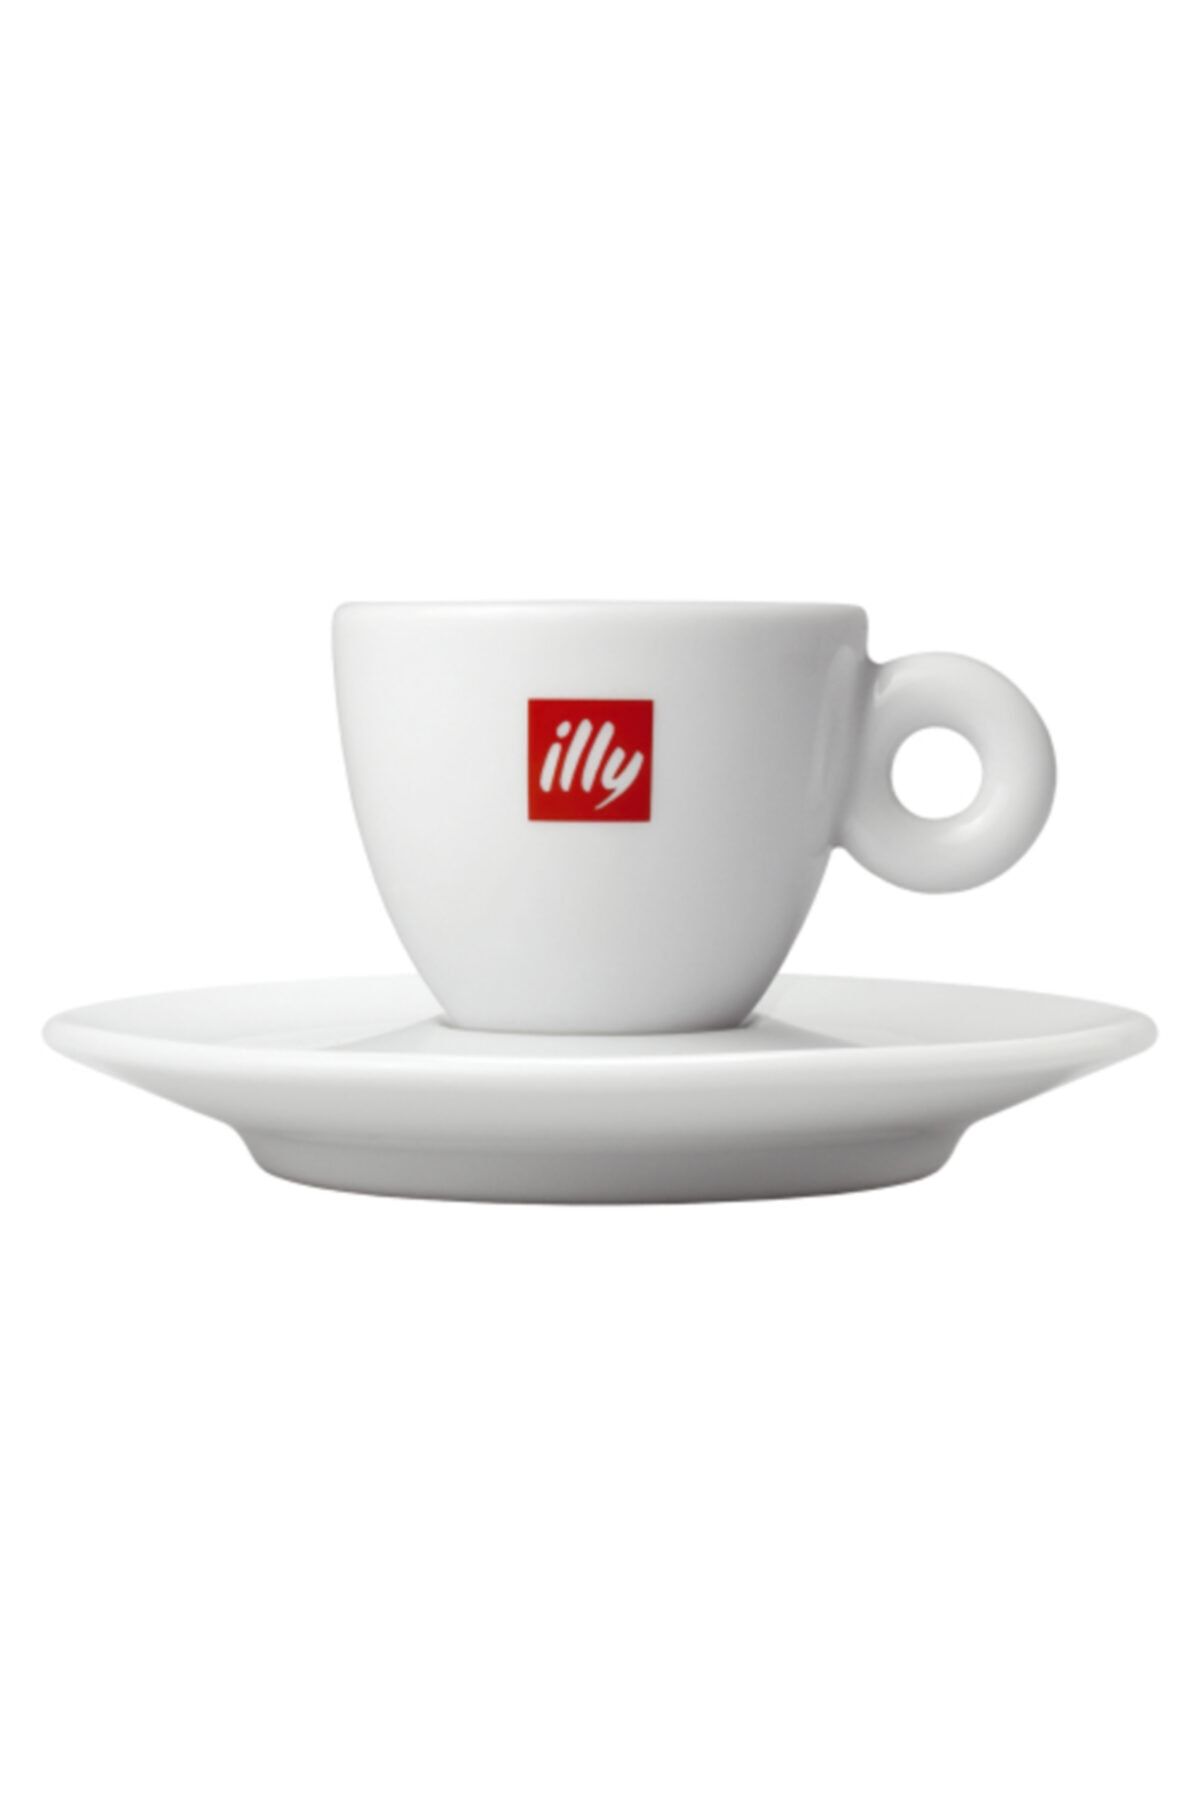 illy Logolu Klasik Espresso Fincanı Ve Tabağı